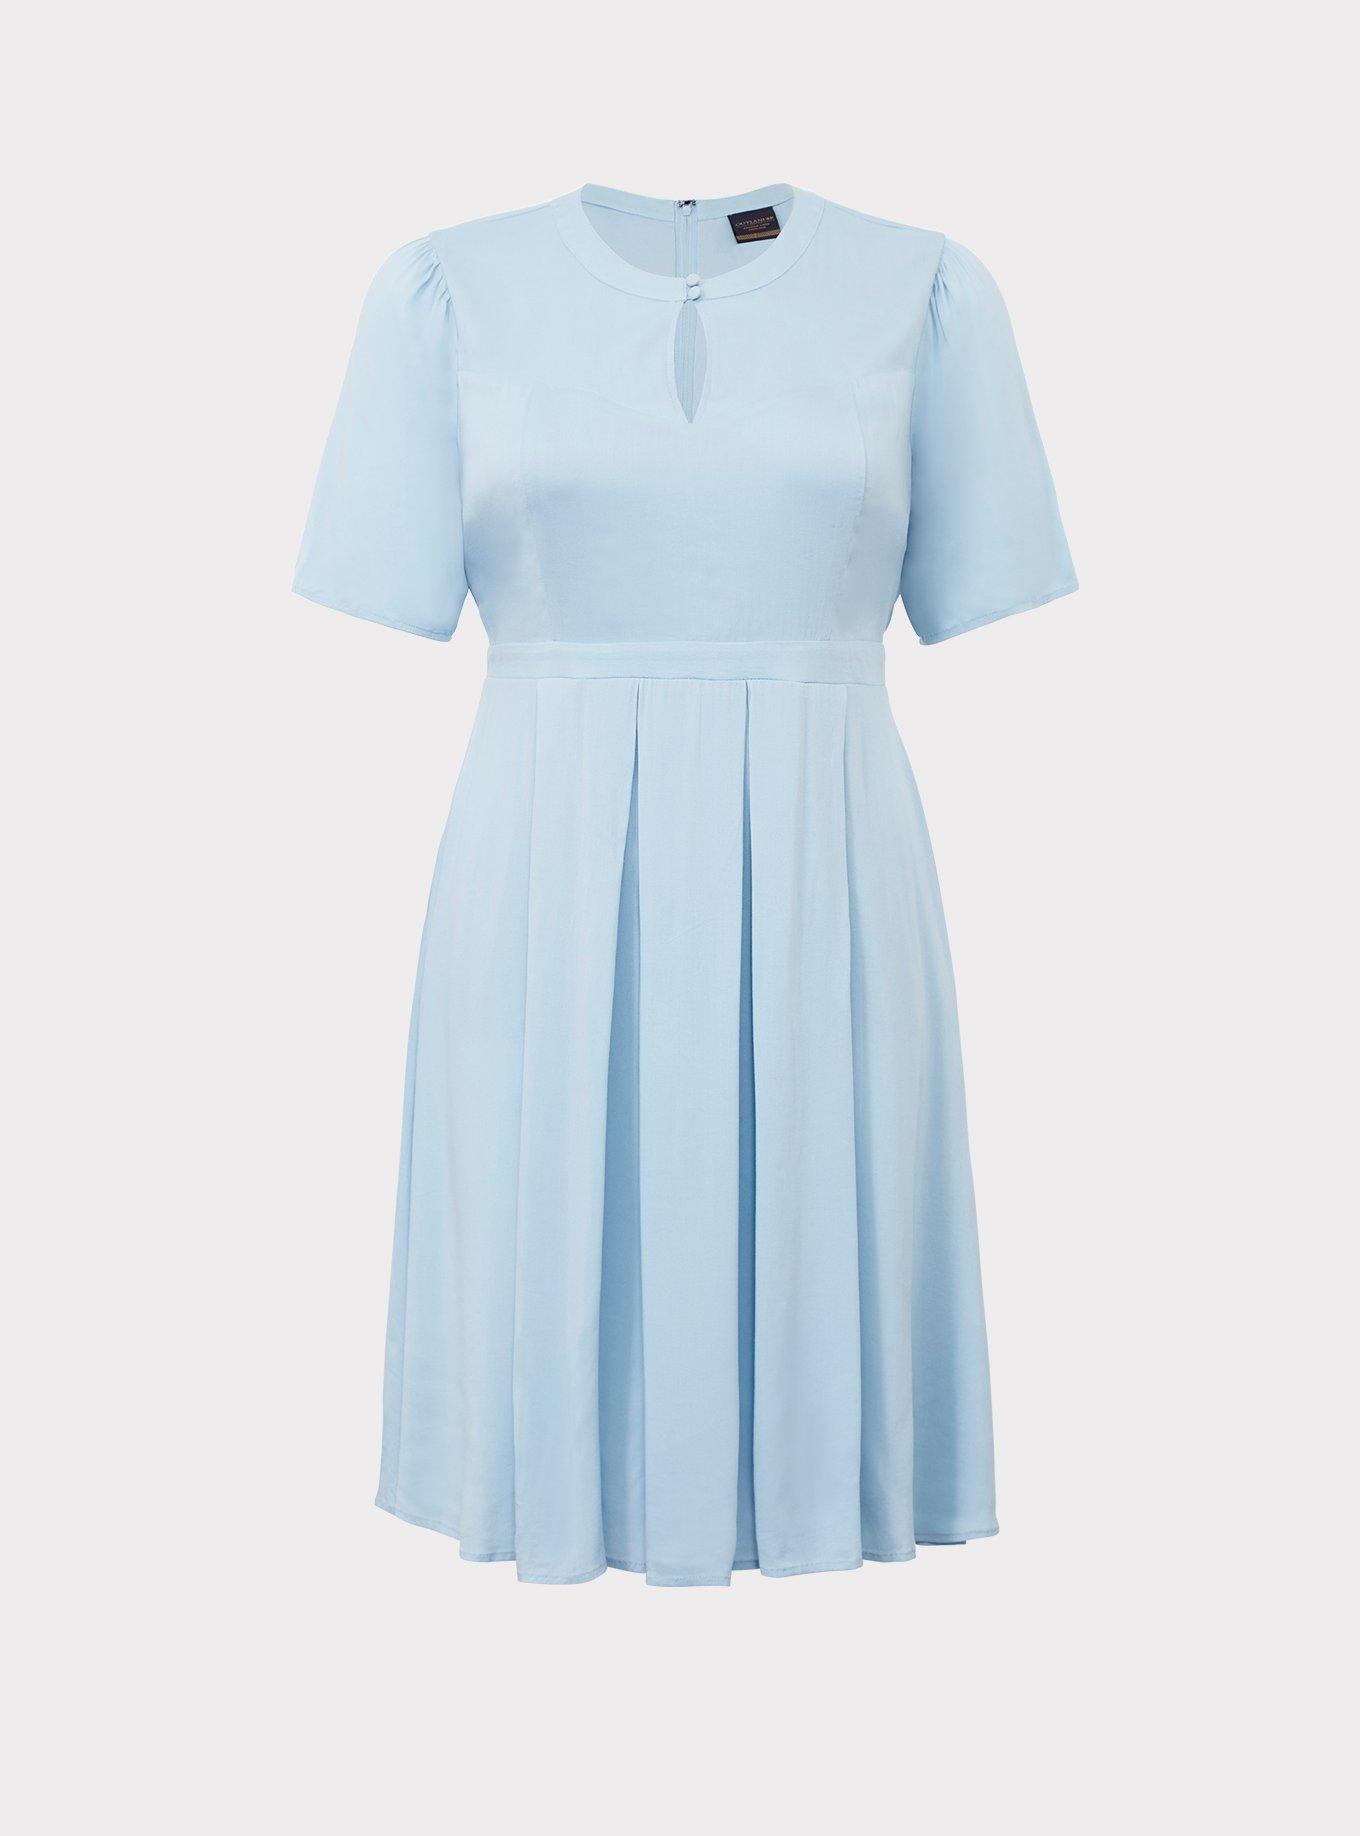 NWT Torrid 5 Blue Mini Textured Rayon Shirt Dress; Plus Size Women's 5X,  28, 28W